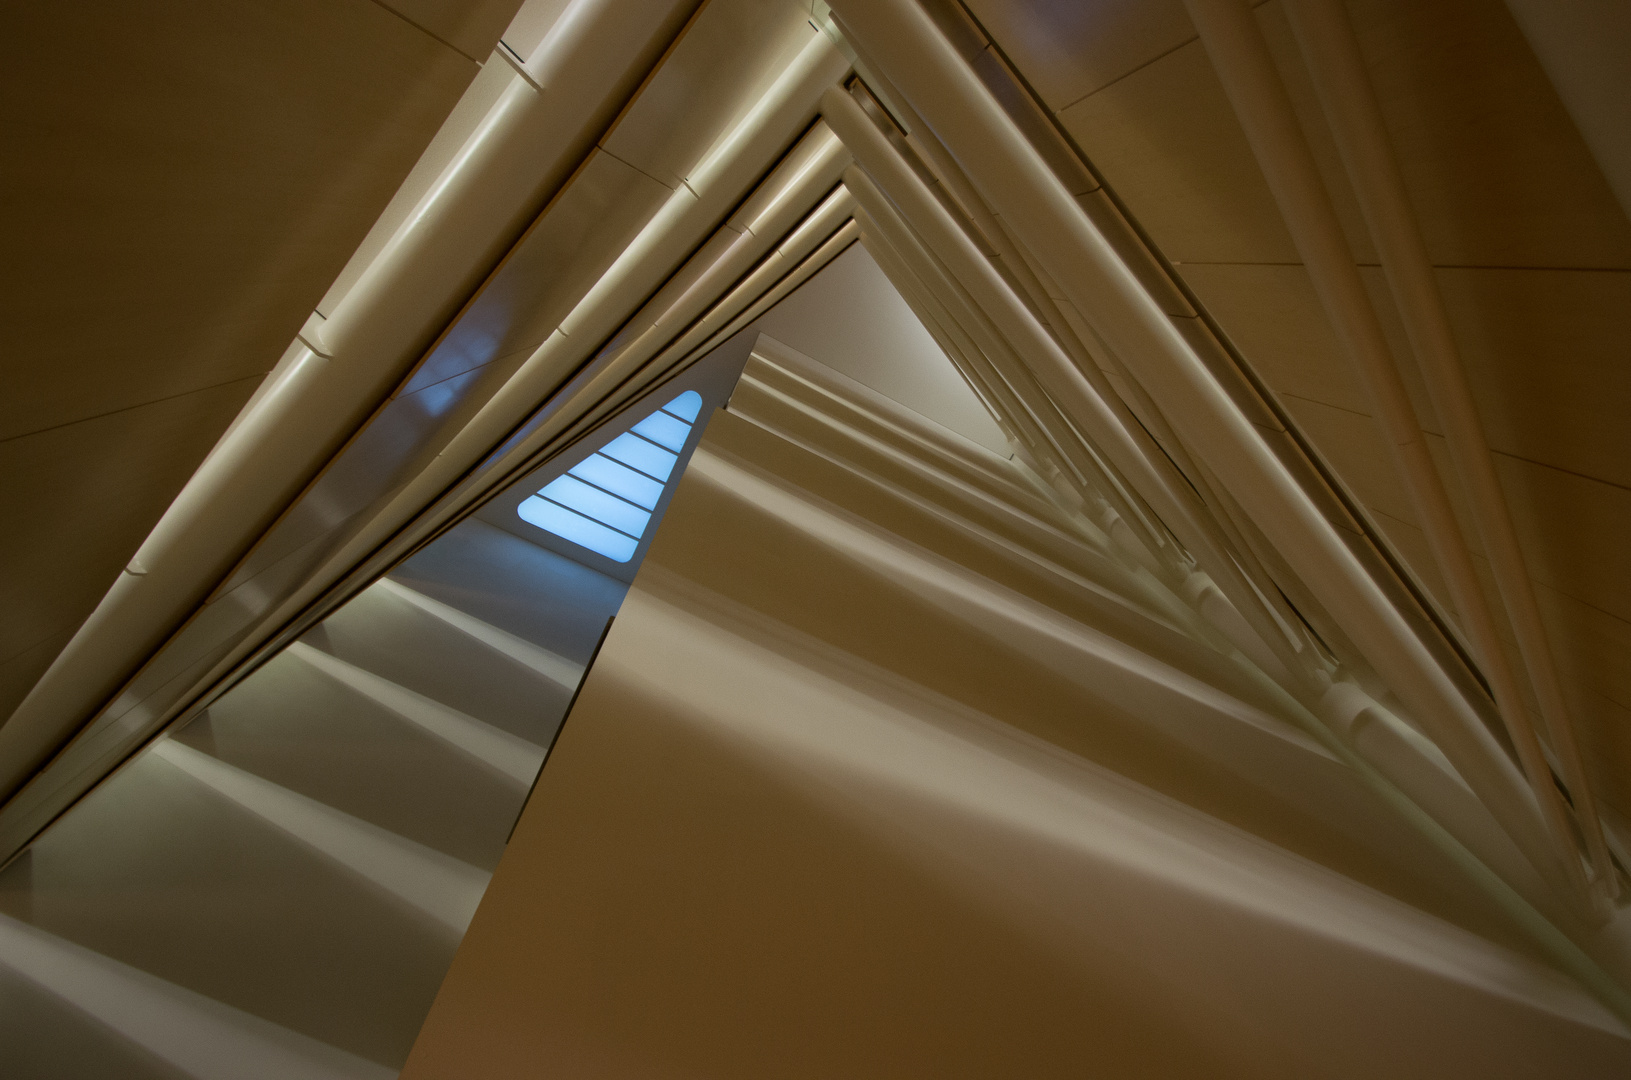 Rechtswissenschaftliche Bibliothek der Universität Zürich, Santiago Calatrava